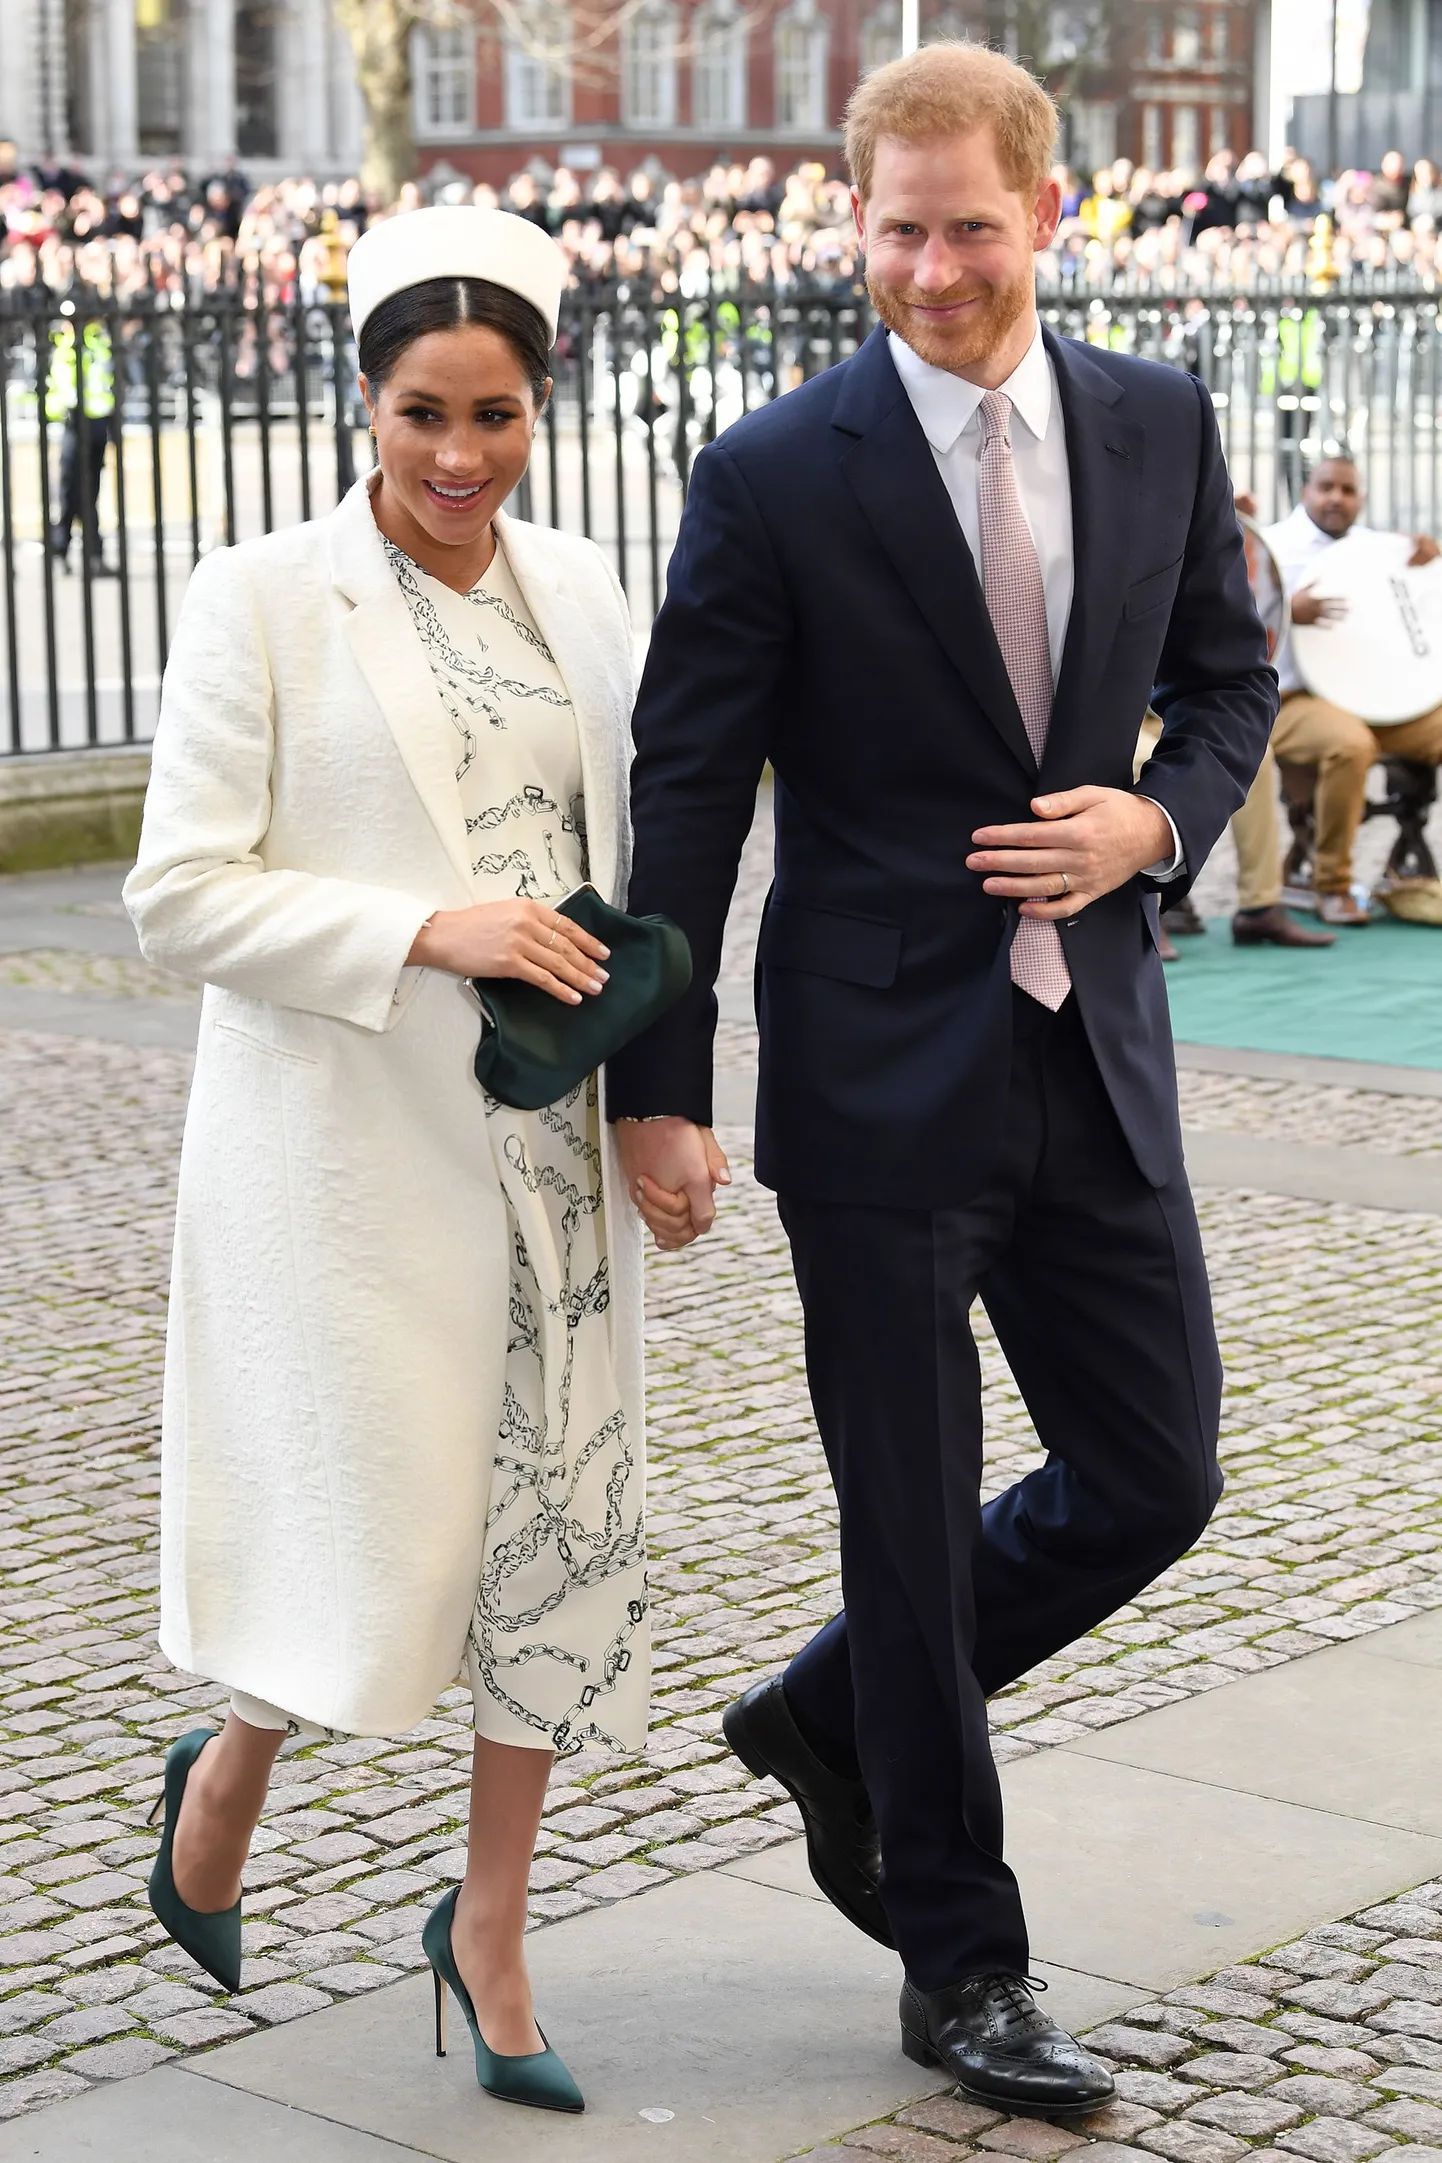 Prints Harry ja Sussexi hertsoginna Meghan suundumas 11. märtsil Westminster Abbeysse Rahvaste Ühenduse päeva jumalateenistusele